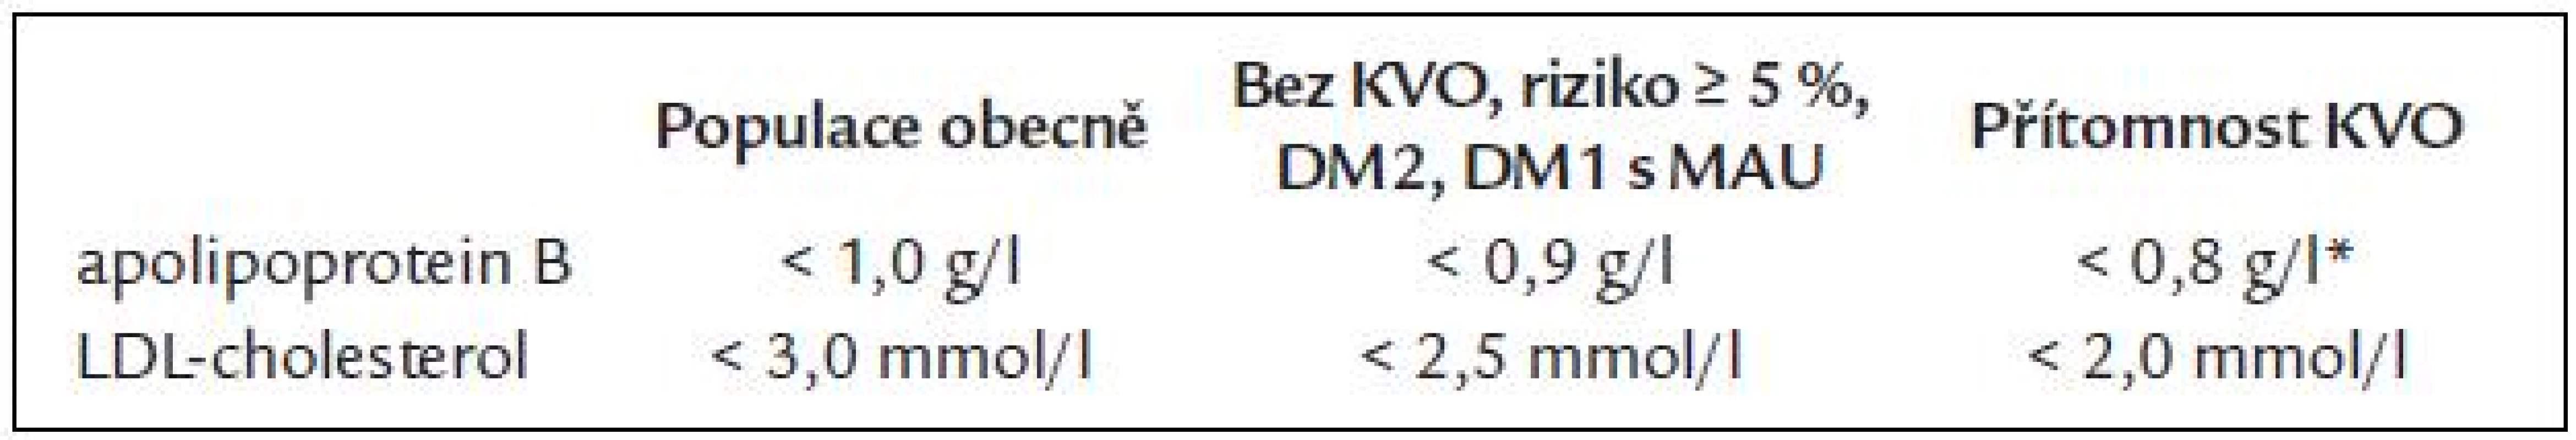 Cílové hodnoty apolipoproteinu B a LDL-cholesterolu [19].